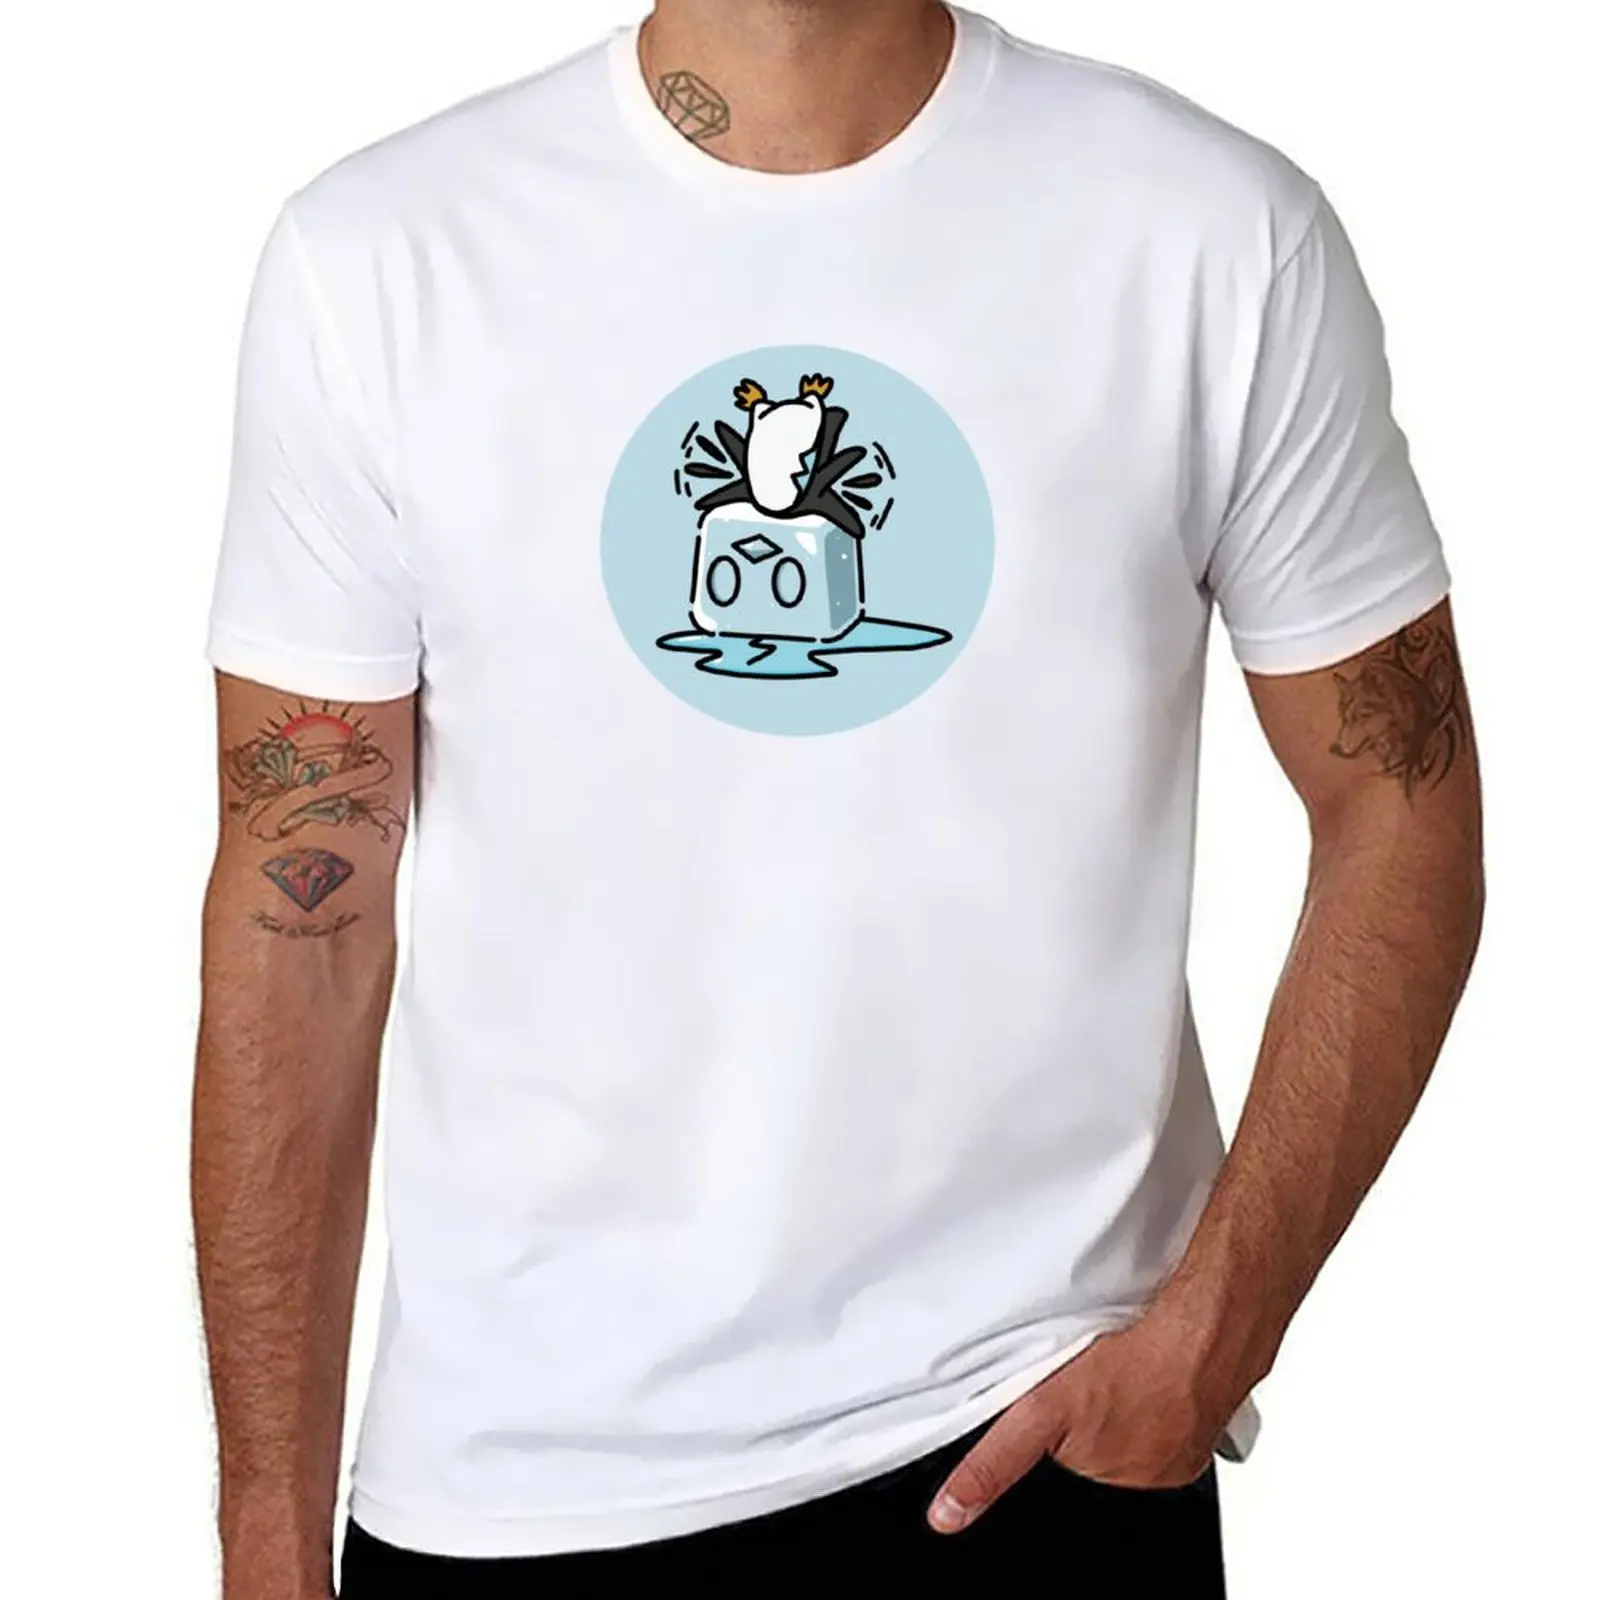 

Новая футболка застрявшего сейкия, короткая футболка, Мужская быстросохнущая футболка, футболки для мальчиков, футболки, мужские футболки с графическим рисунком, забавные